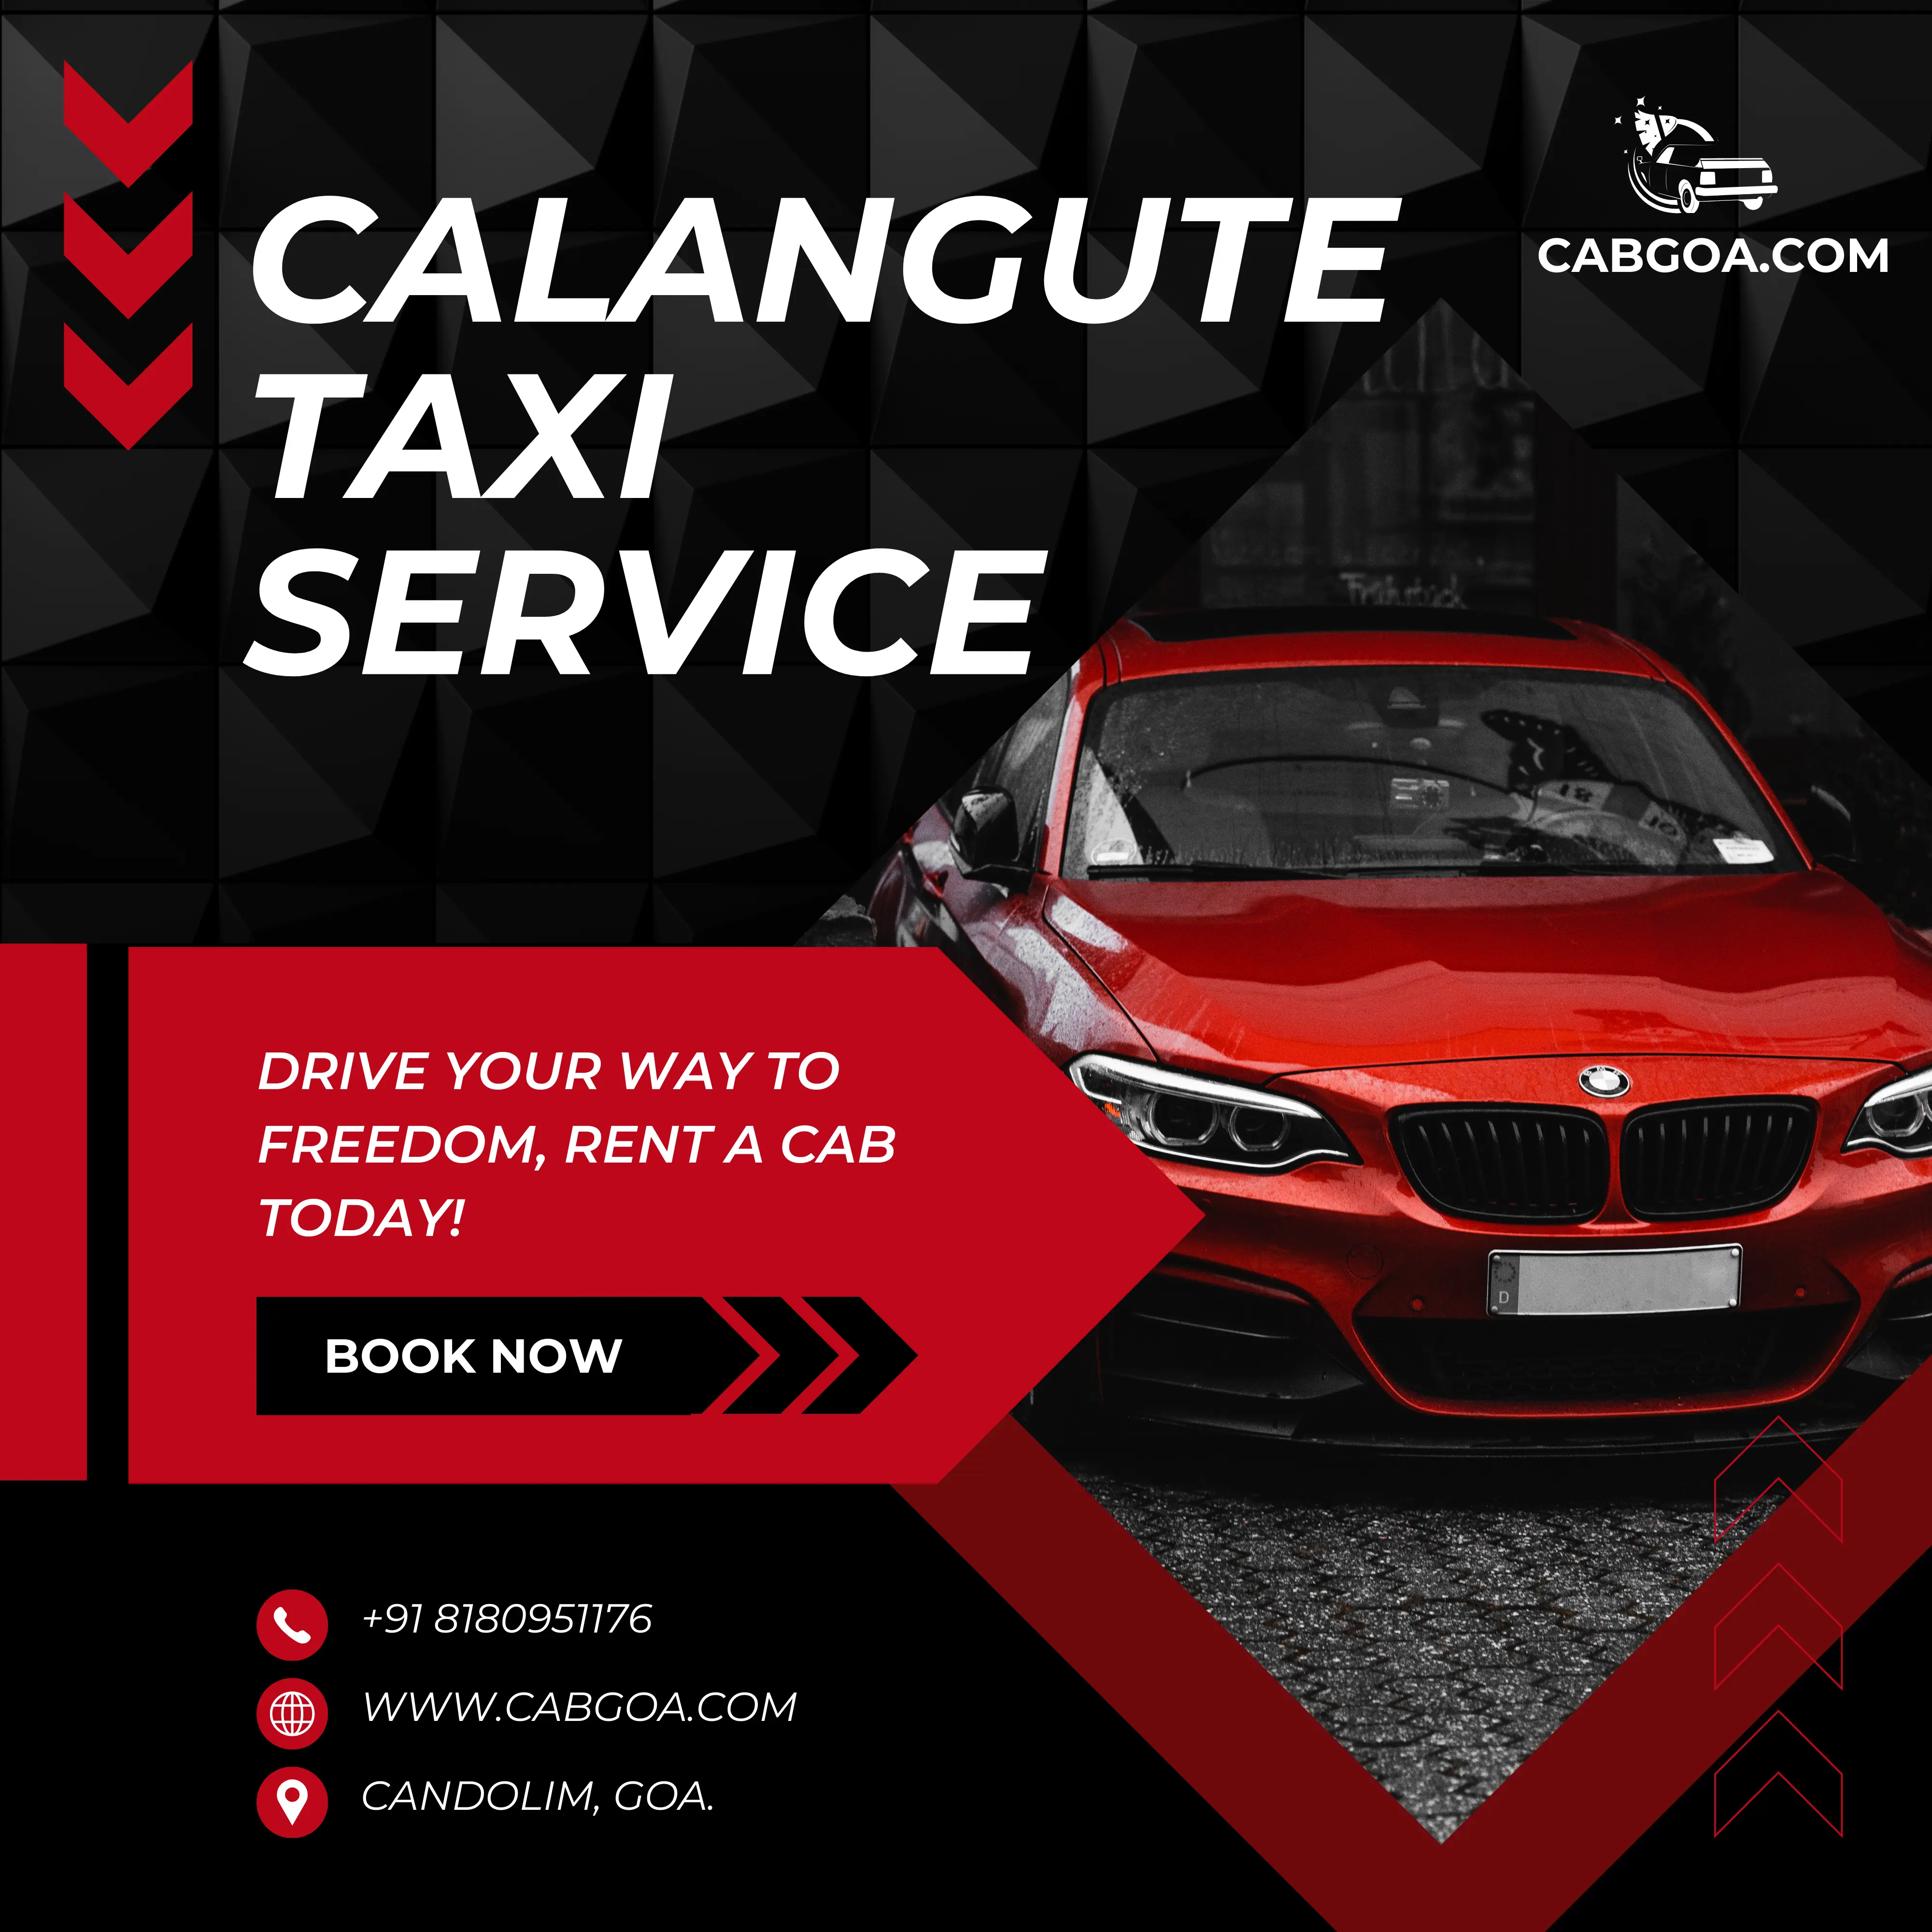 Calangute Taxi Service